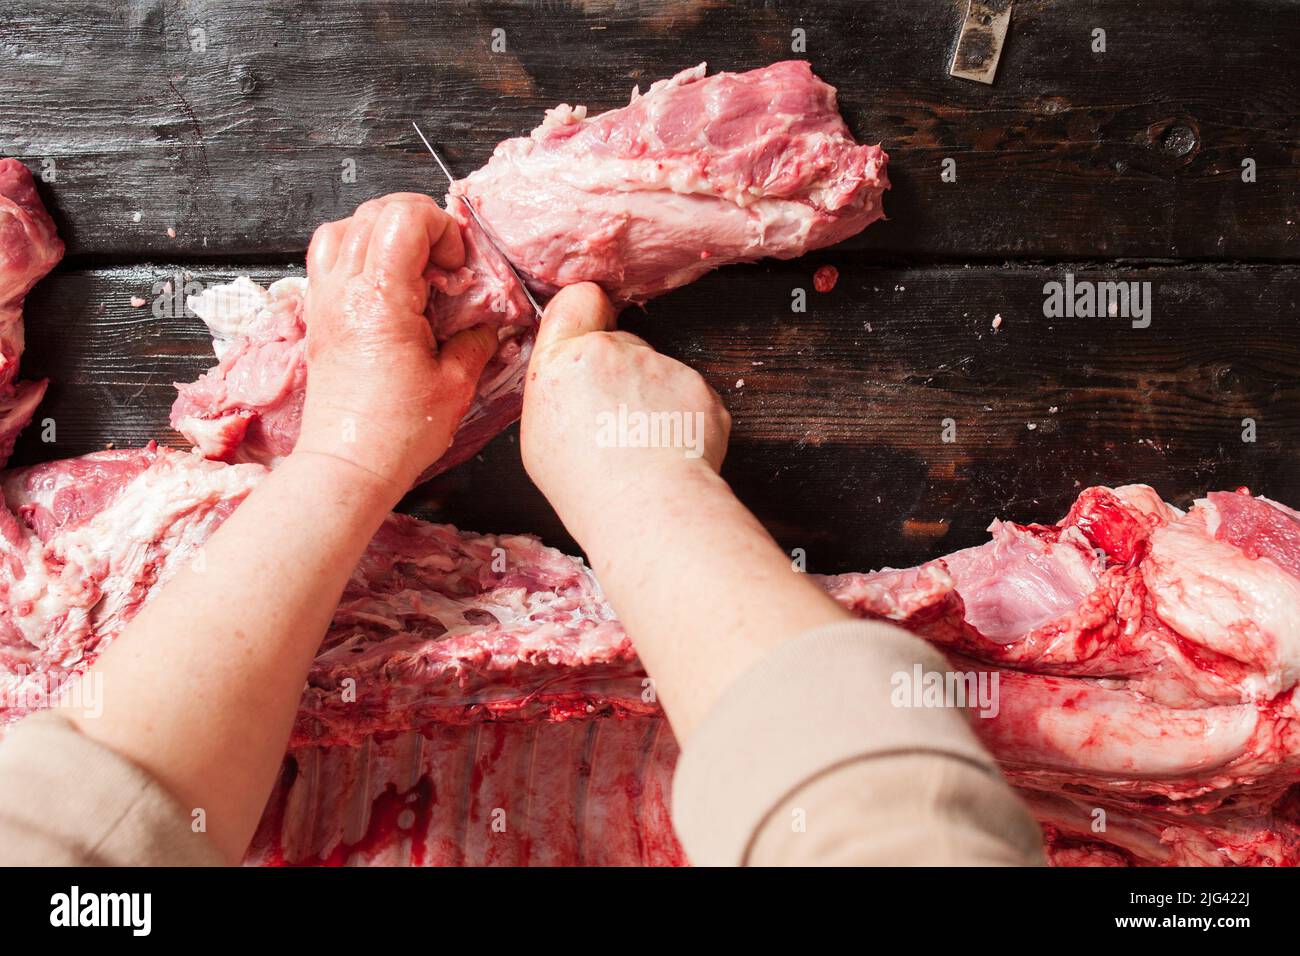 Le boucher coupe la viande de porc crue. Fond en bois Banque D'Images